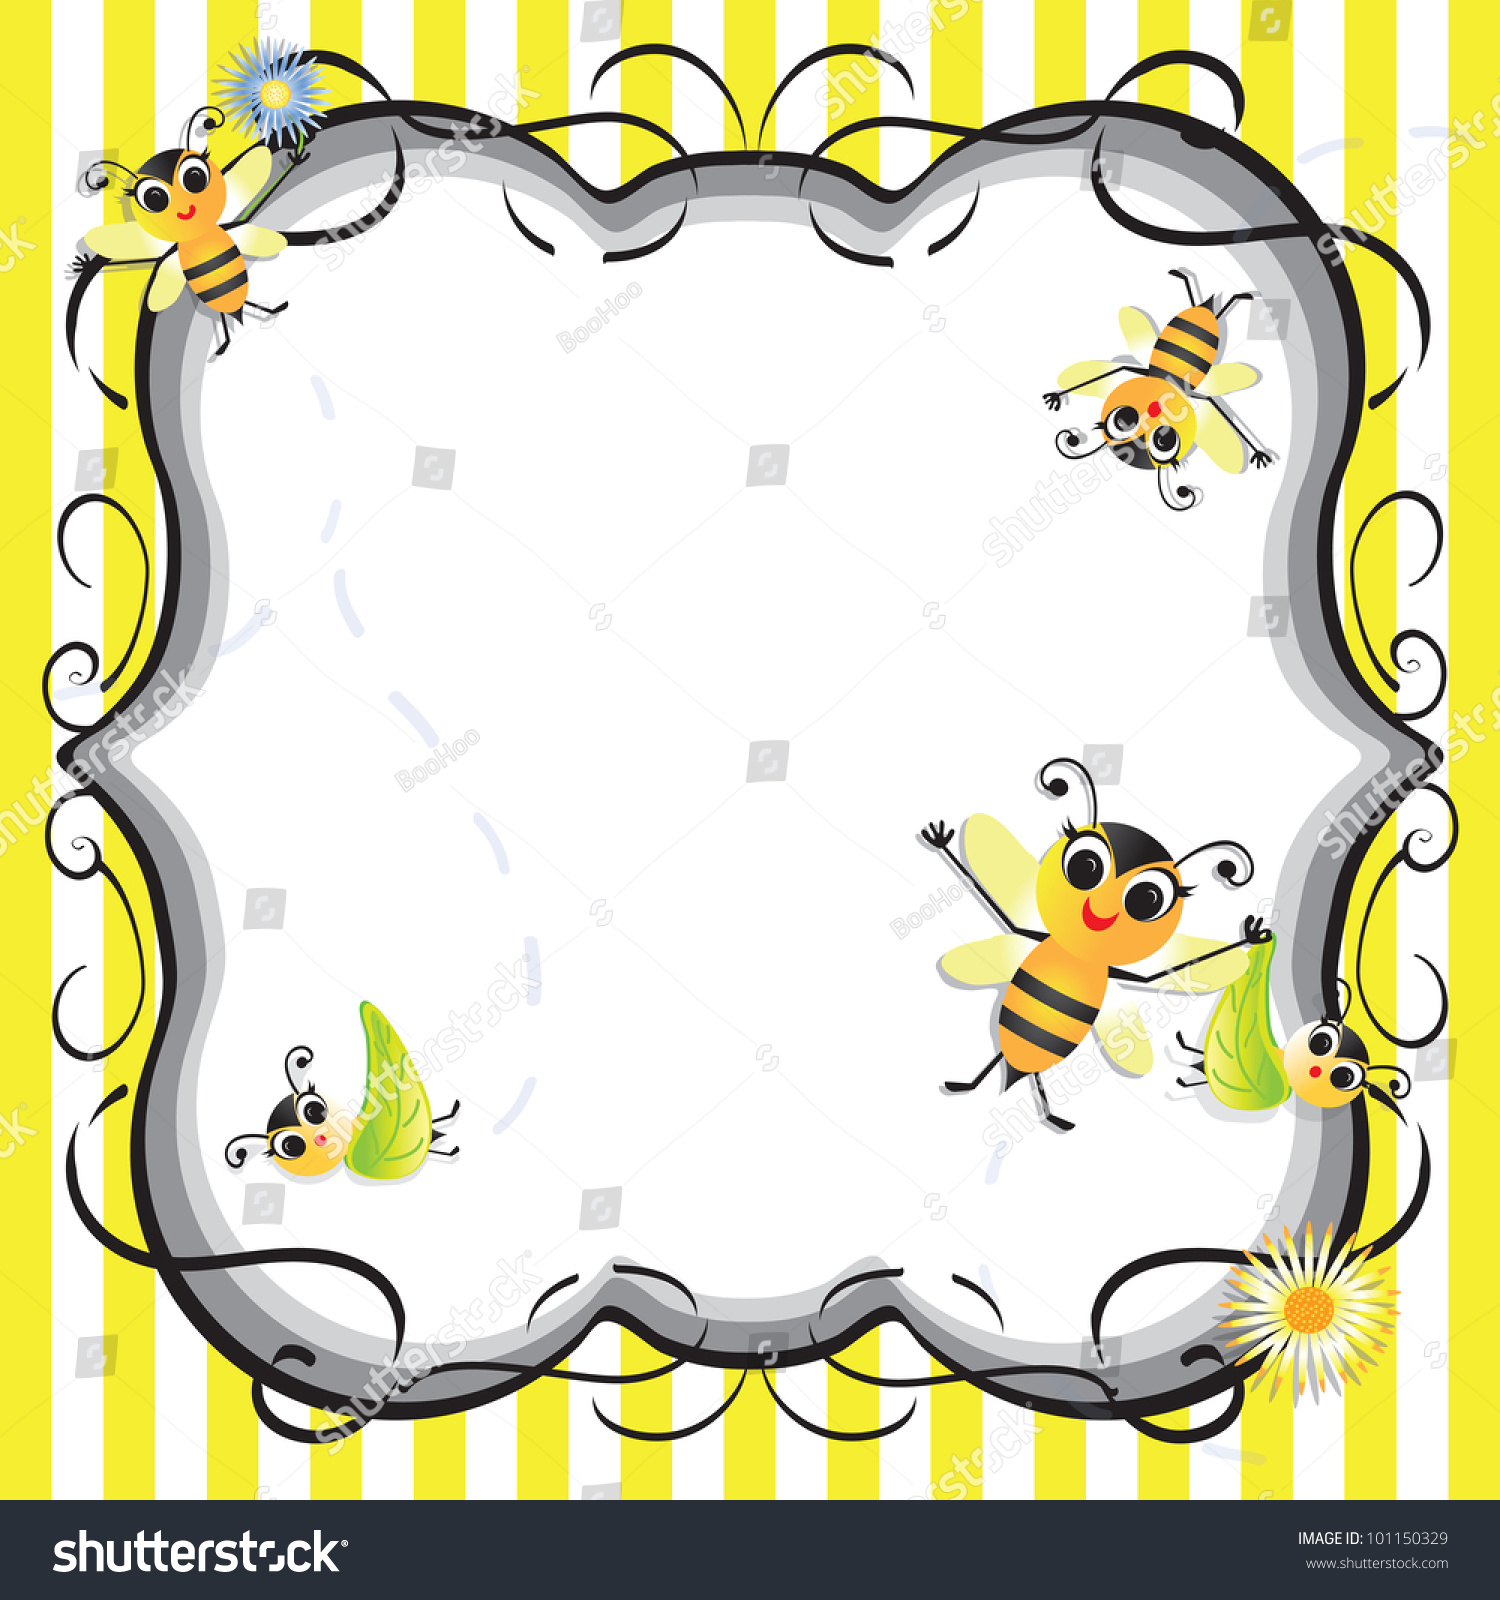 bumble bee clip art border - photo #49